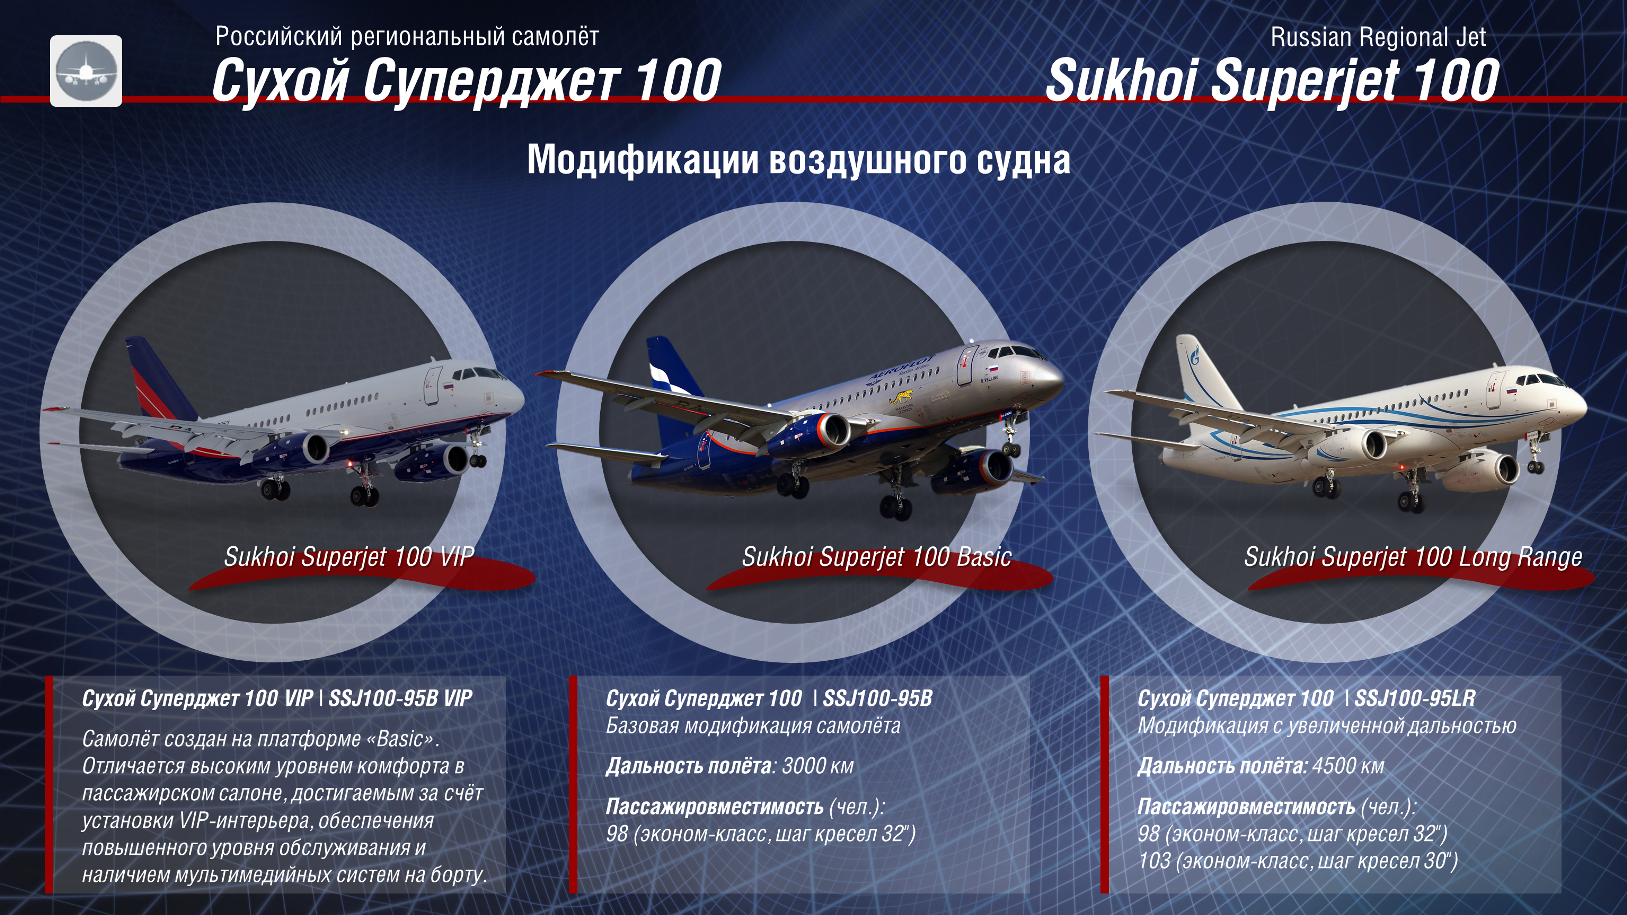 Пассажирский авиалайнер Sukhoi Superjet 100